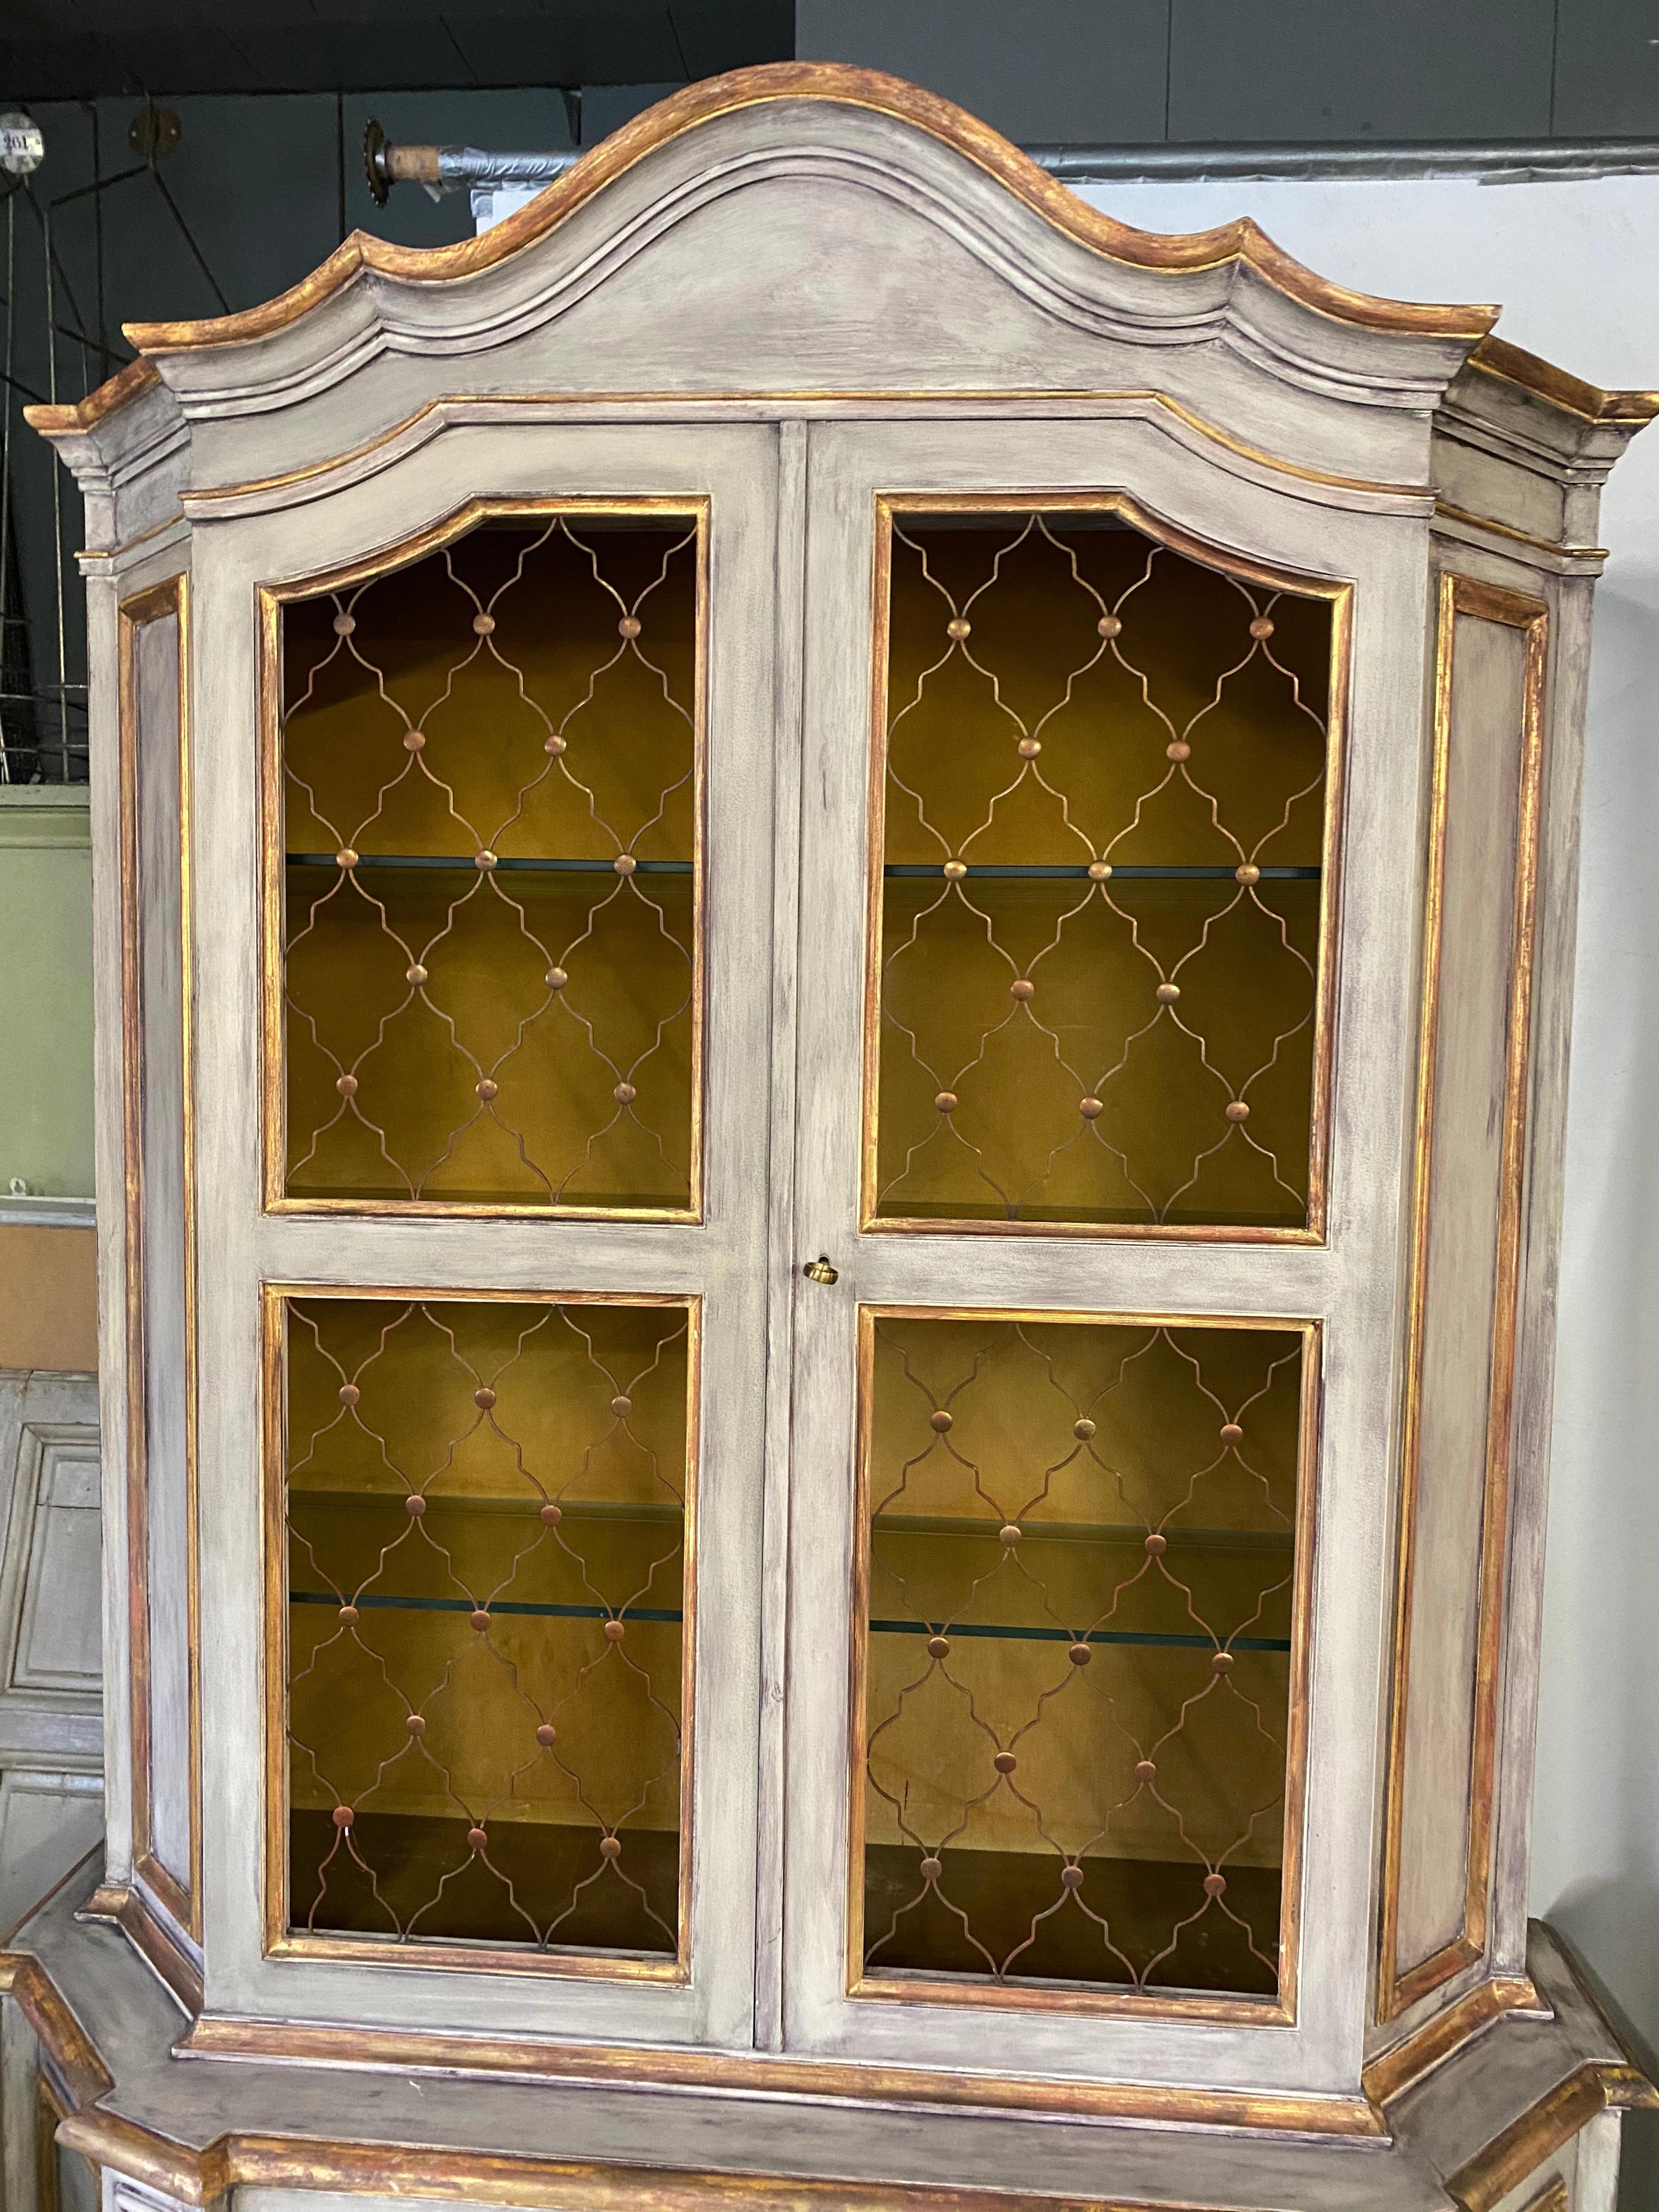 Les armoires de style vénitien comportent quatre étagères ouvertes (trois en verre) derrière une paire de portes revêtues d'écrans de couleur cuivre au-dessus et deux étagères en dessous derrière des portes à panneaux pleins. Le fronton est de style